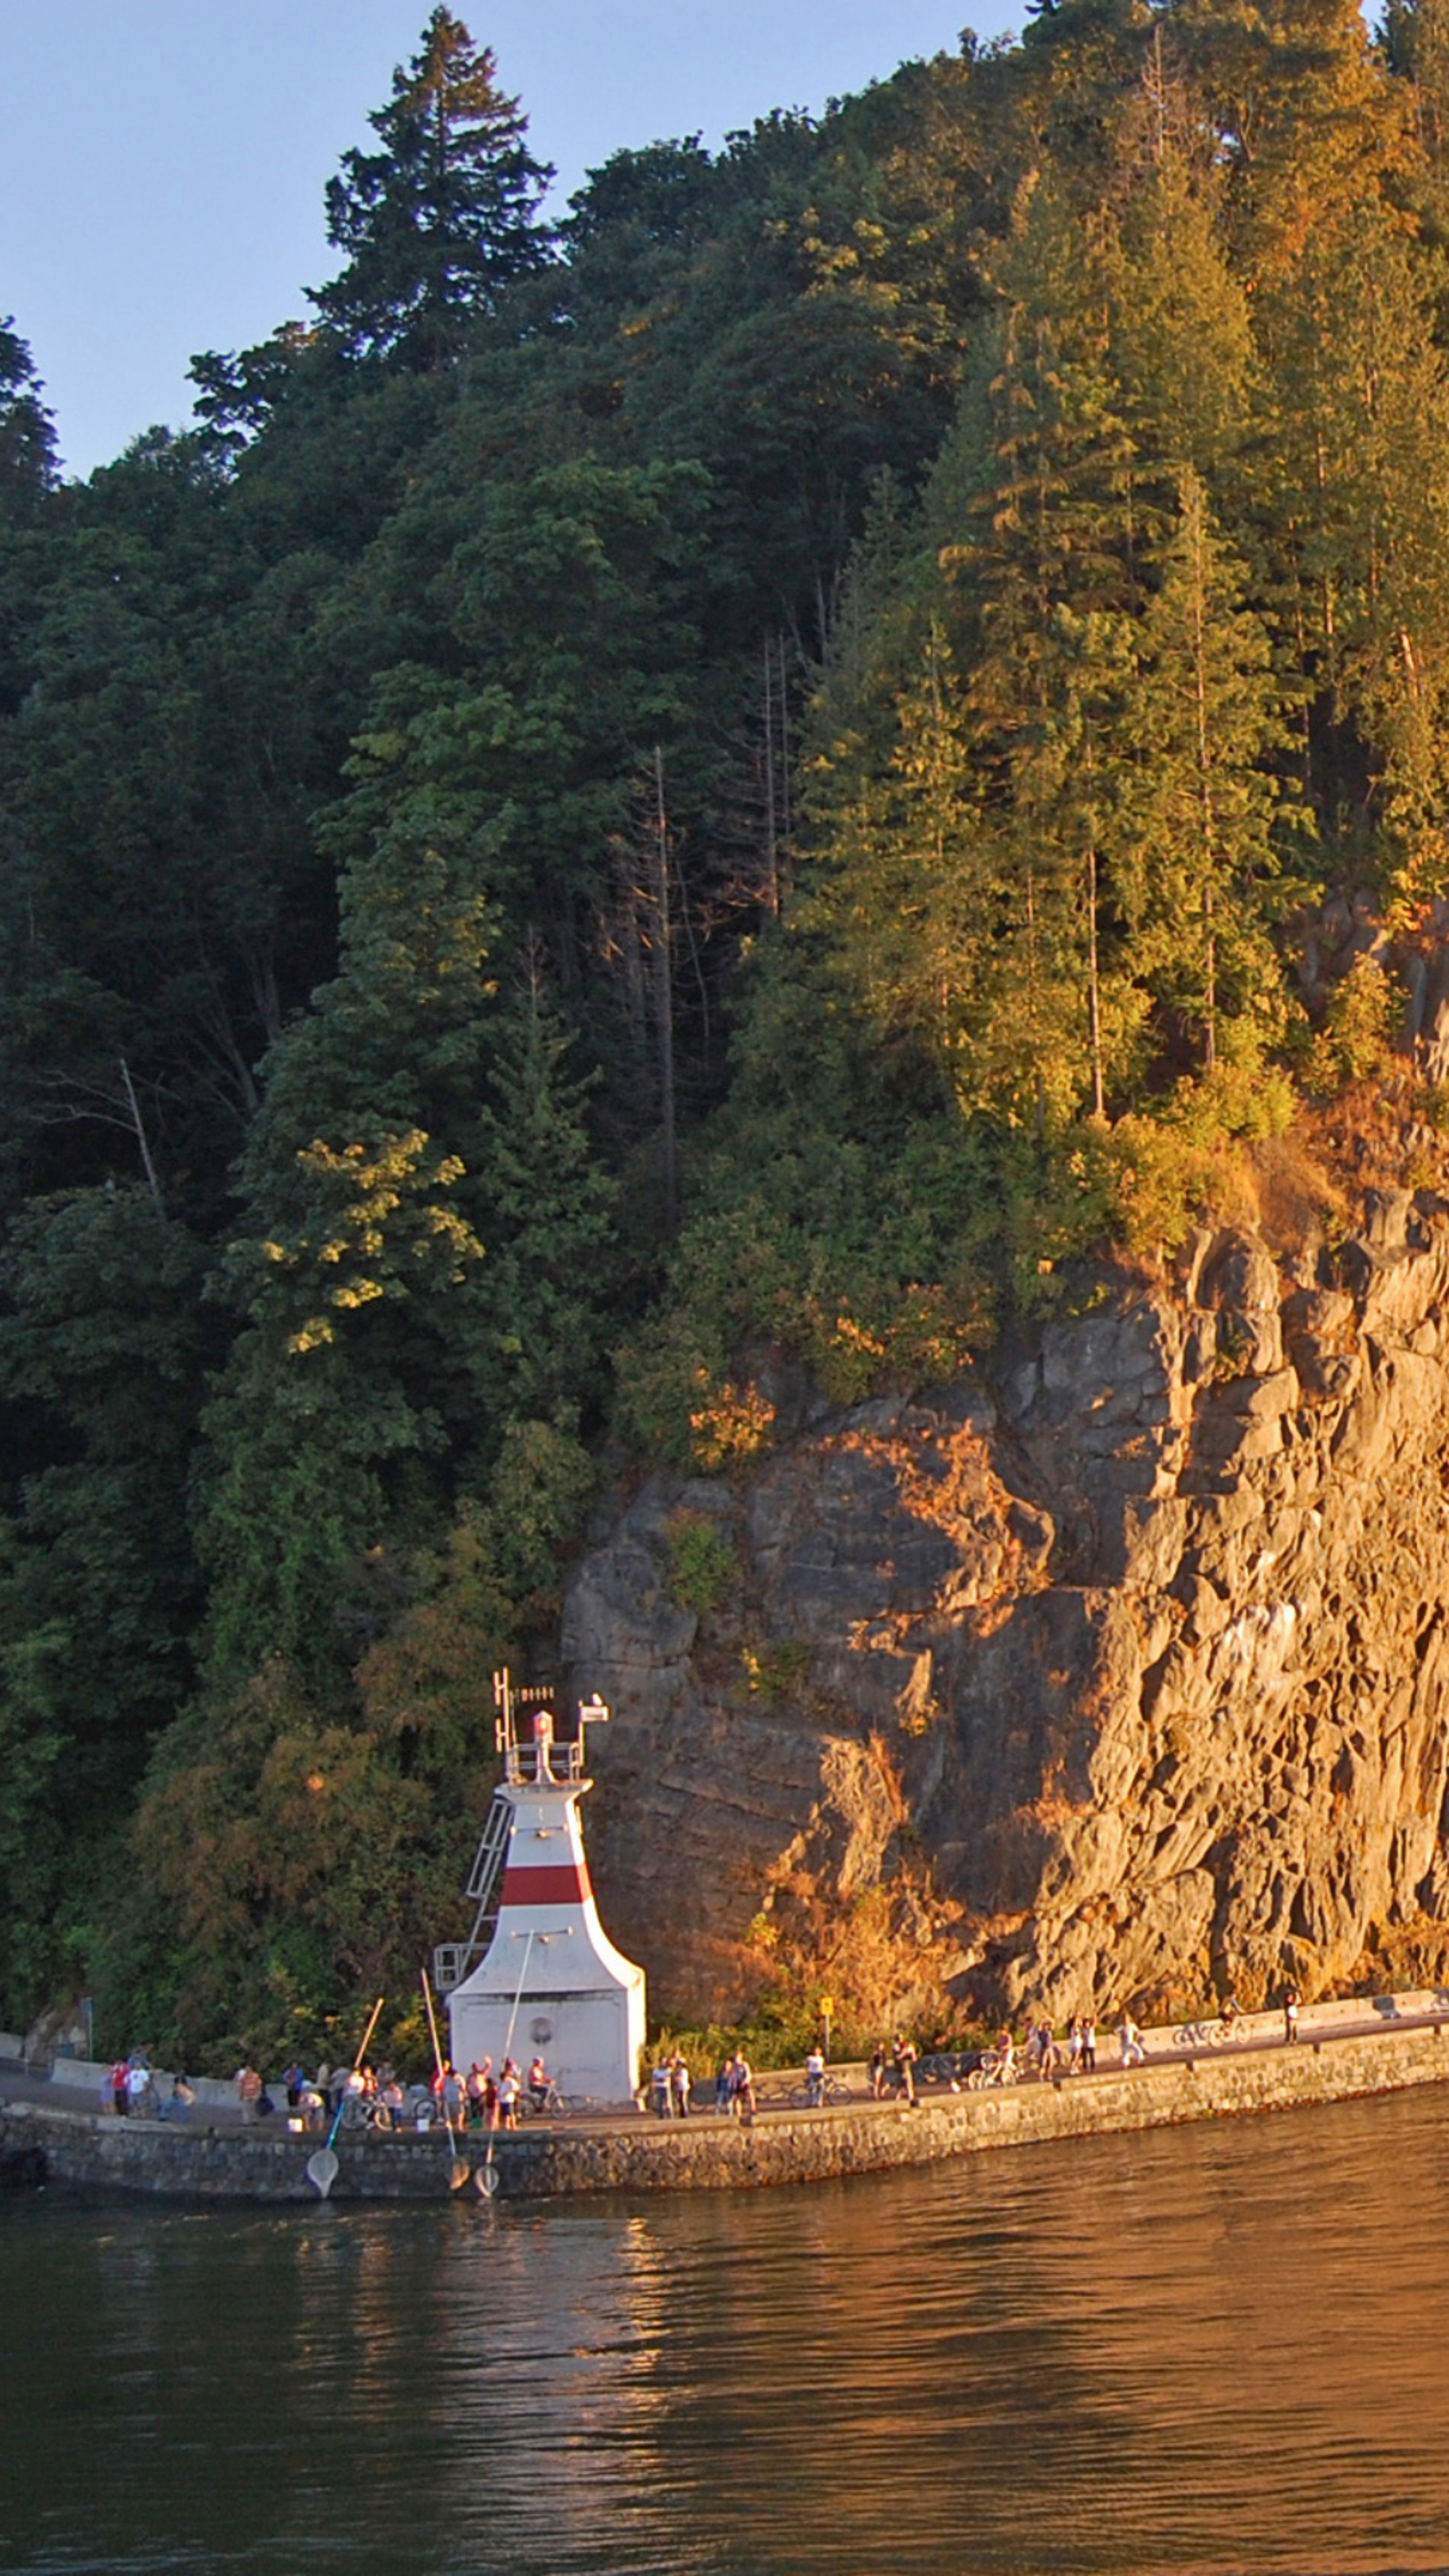 Une scène pittoresque montrant un phare sur une côte rocheuse entourée de forêts luxuriantes, baignée dans la lueur chaleureuse du coucher de soleil.